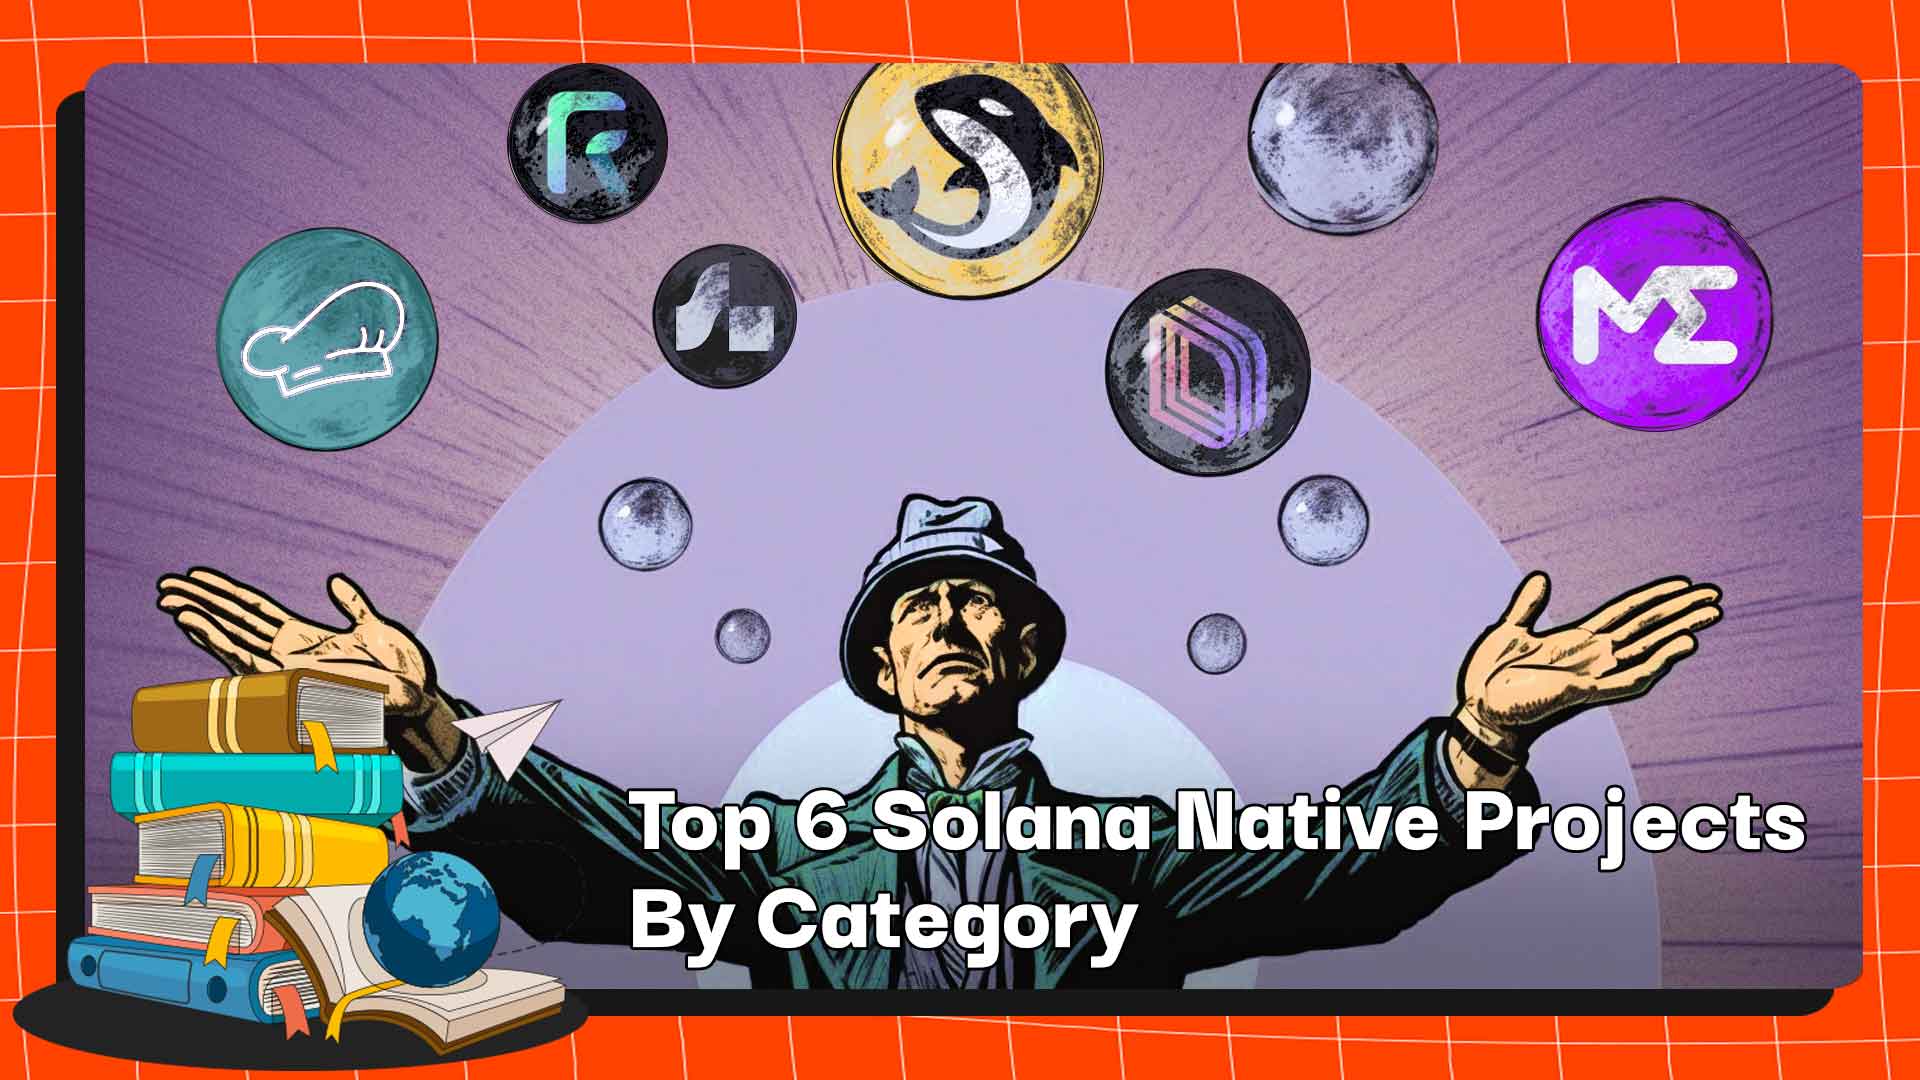 Die 6 besten nativen Solana-Projekte nach Kategorie